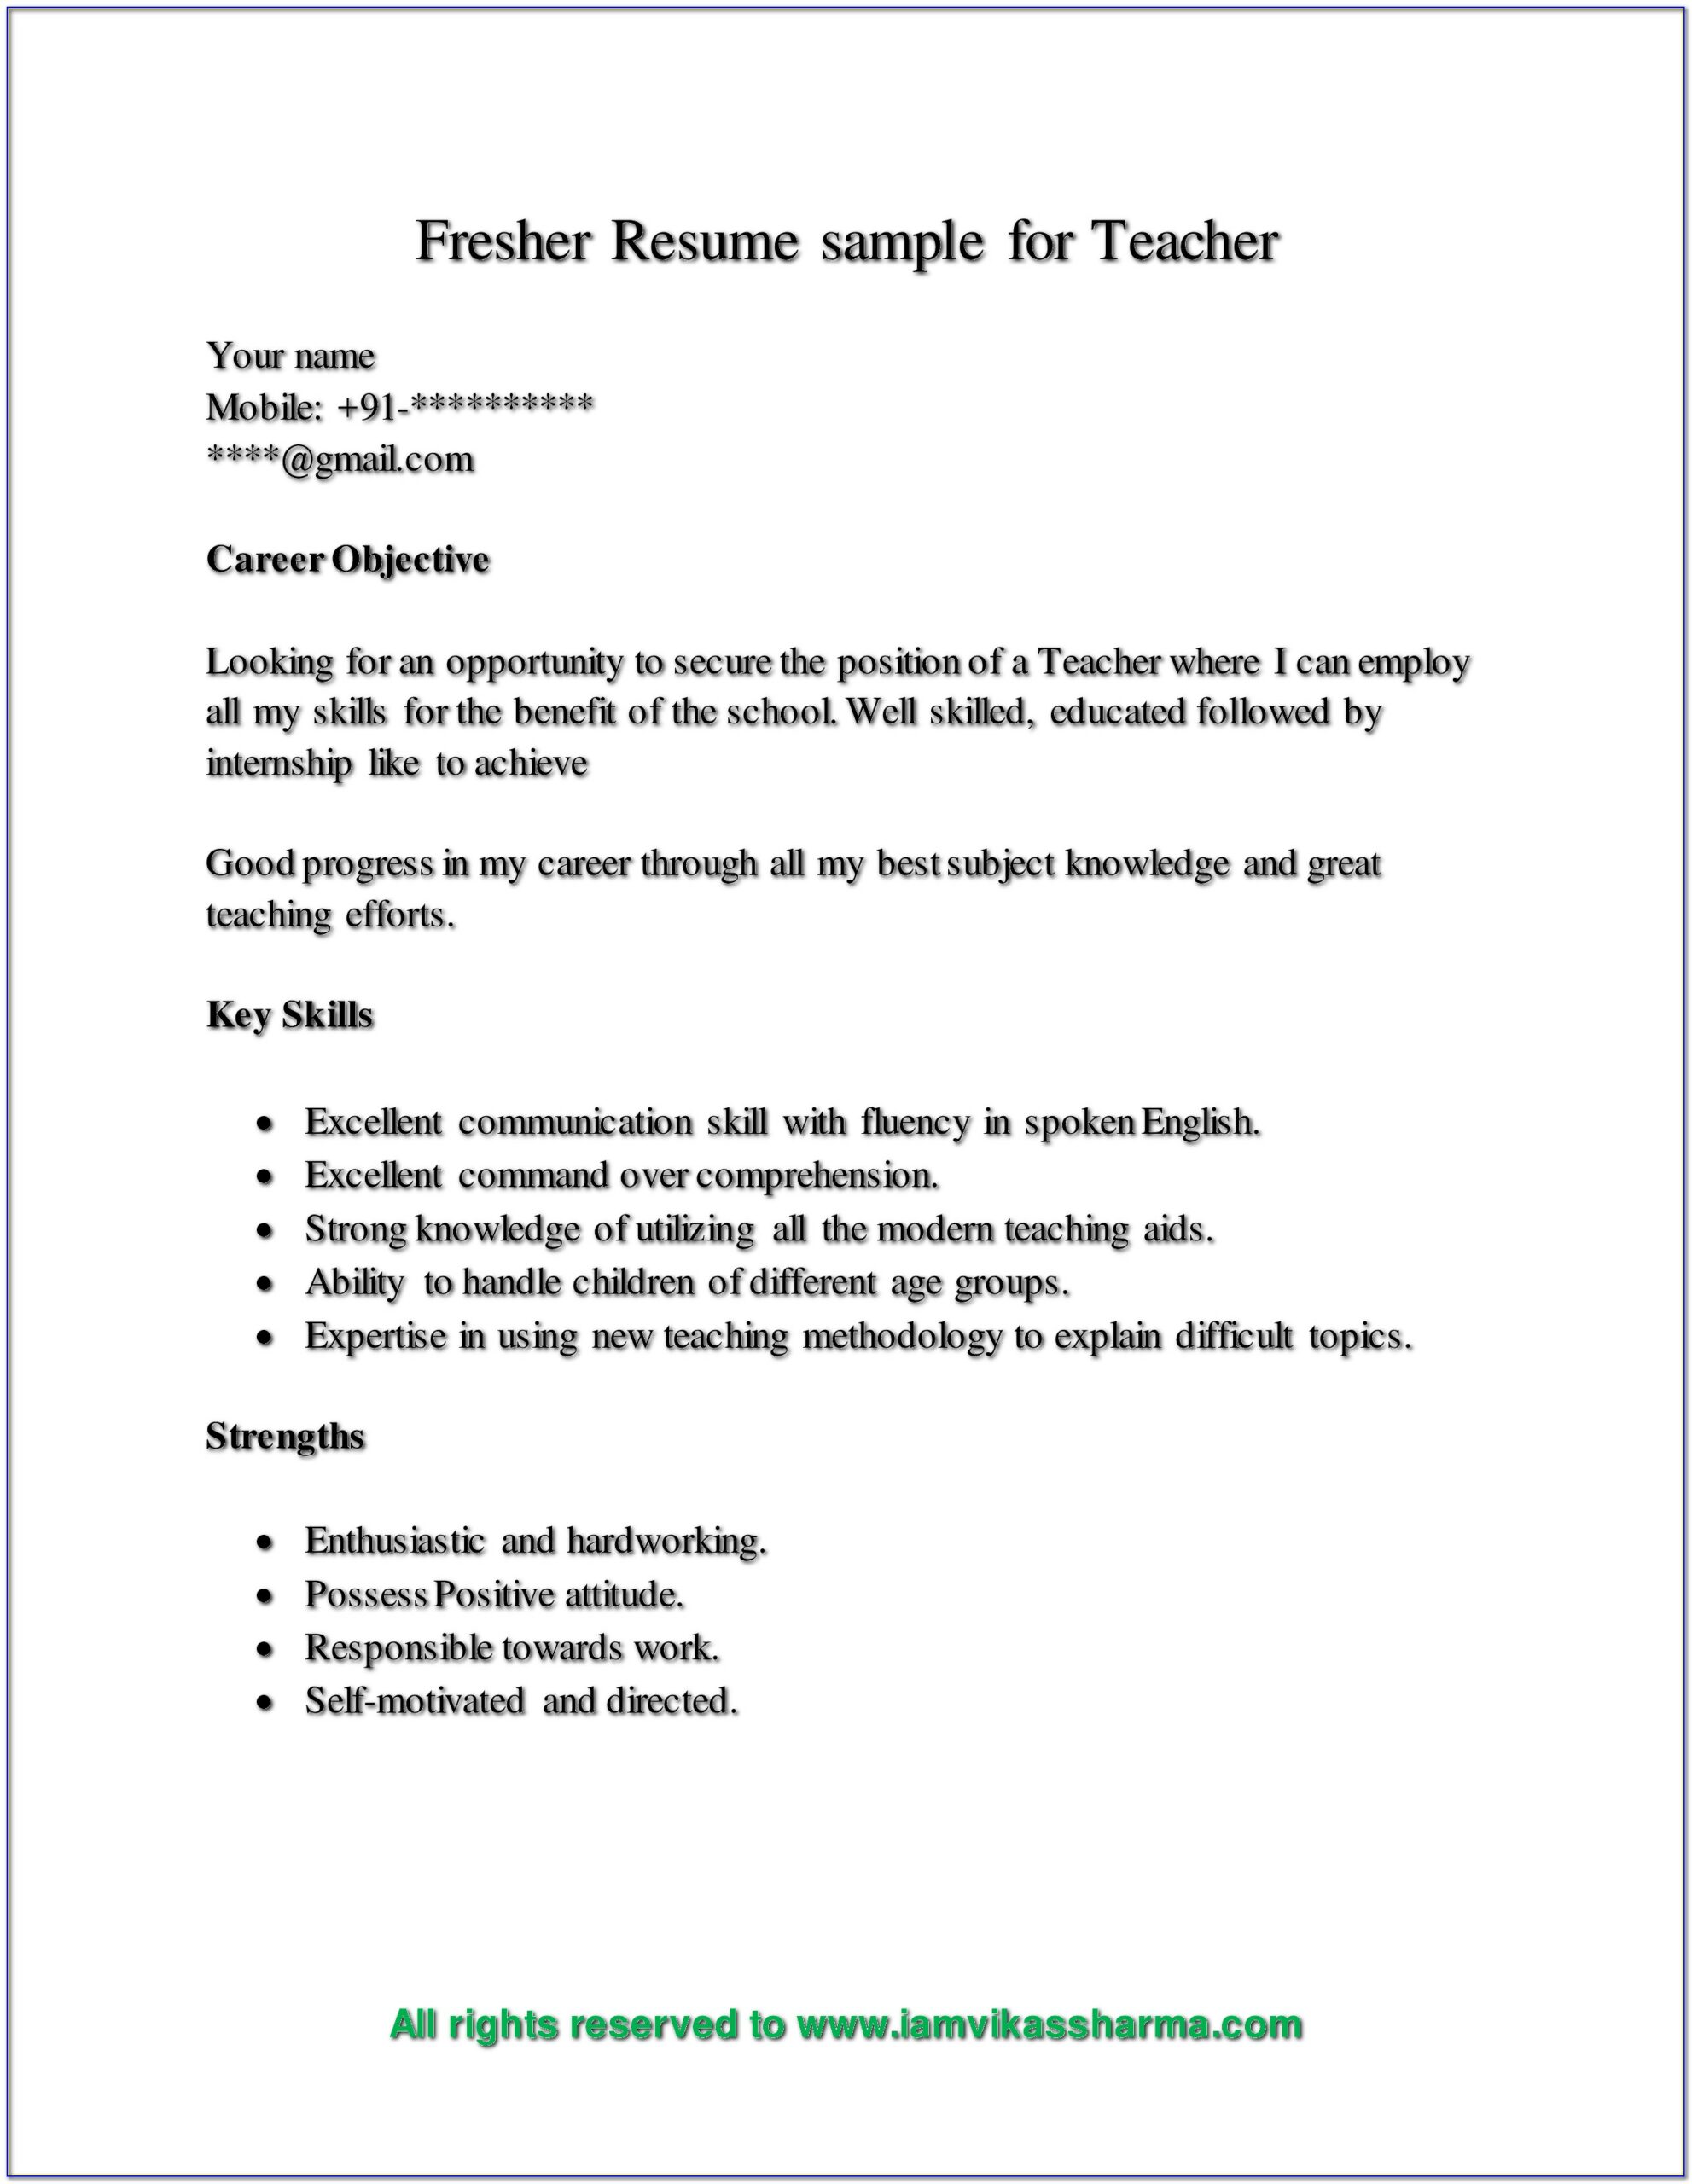 Resume Samples For Teaching Job Fresher